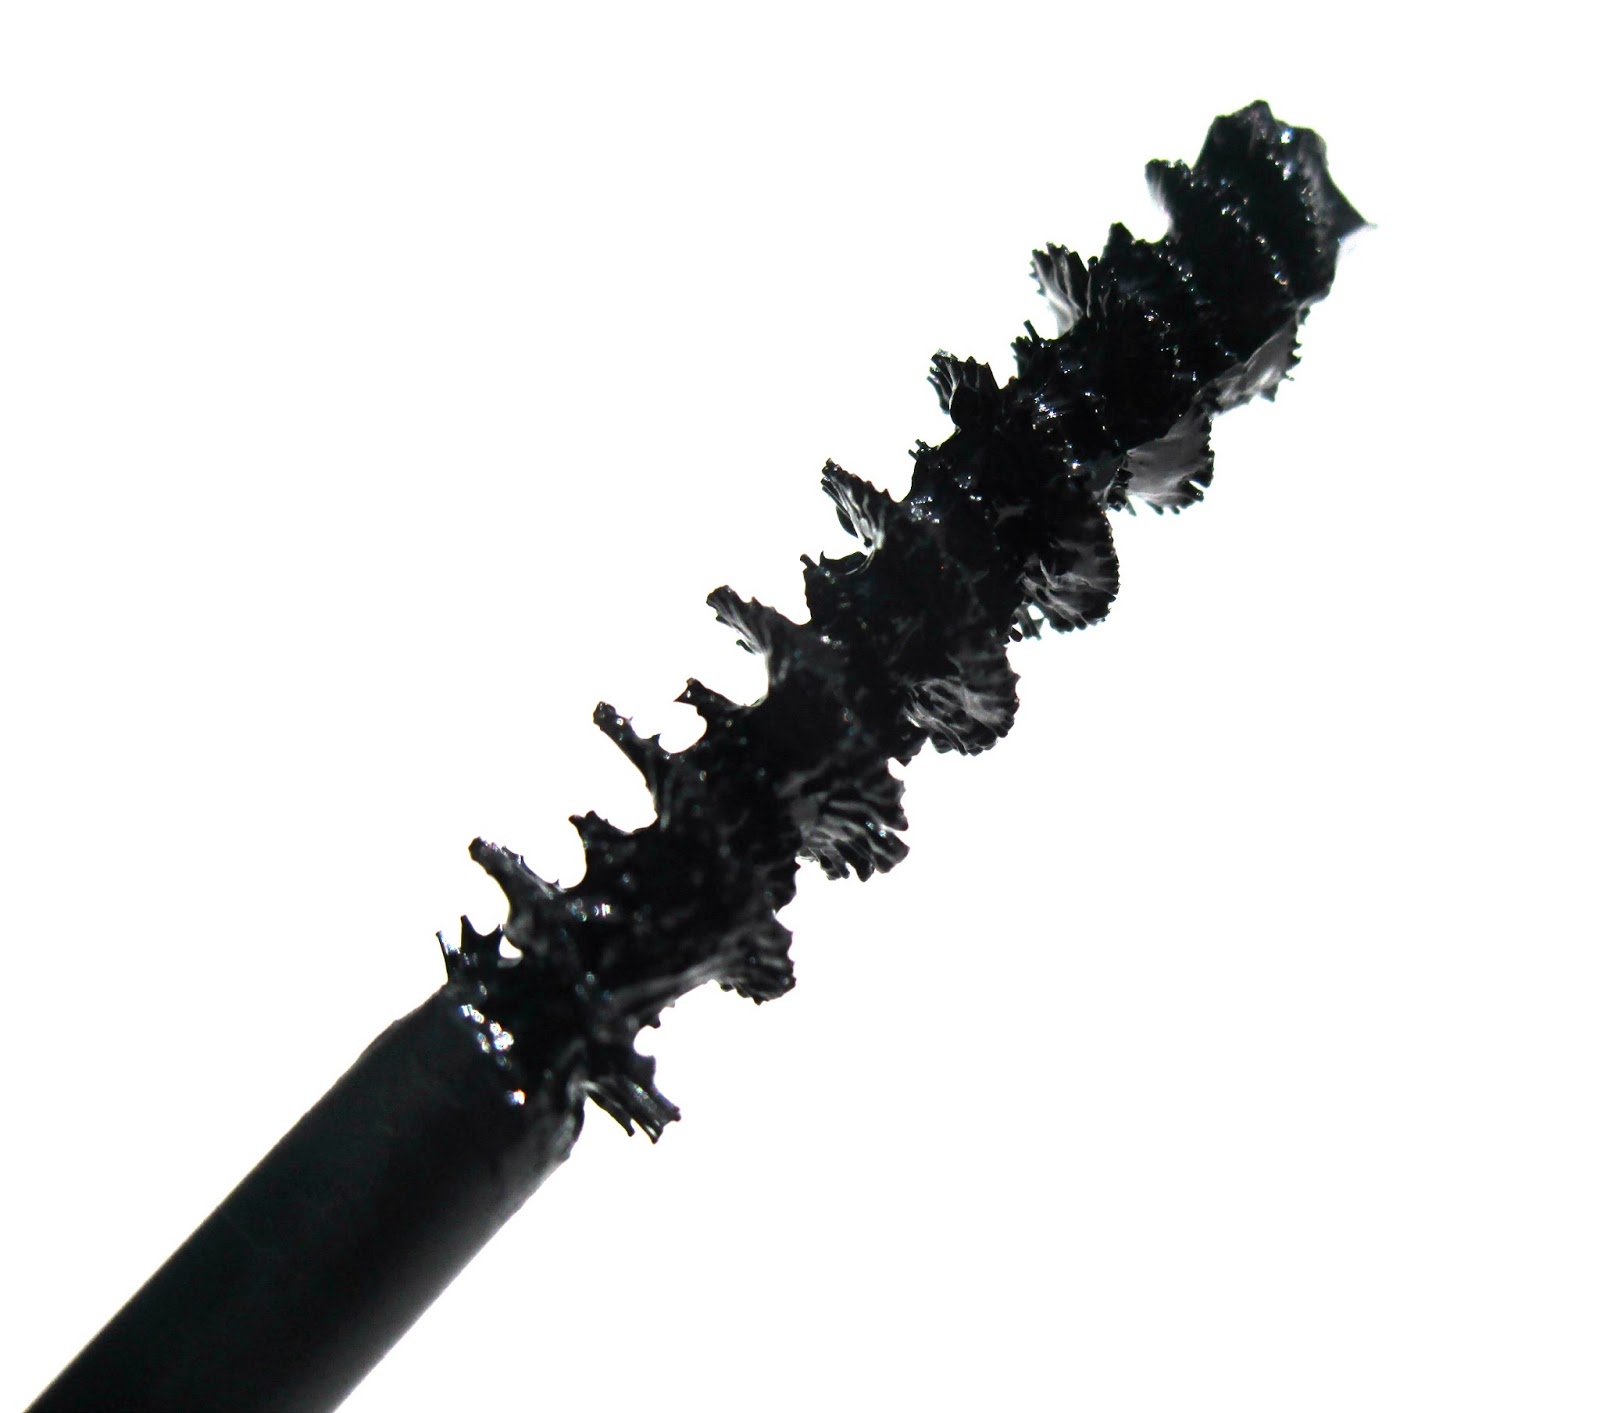 Eyeko Lengthening Skinny Brush Long & tall Mascara, Black, 0.29 Fl Oz (Pack  of 1)